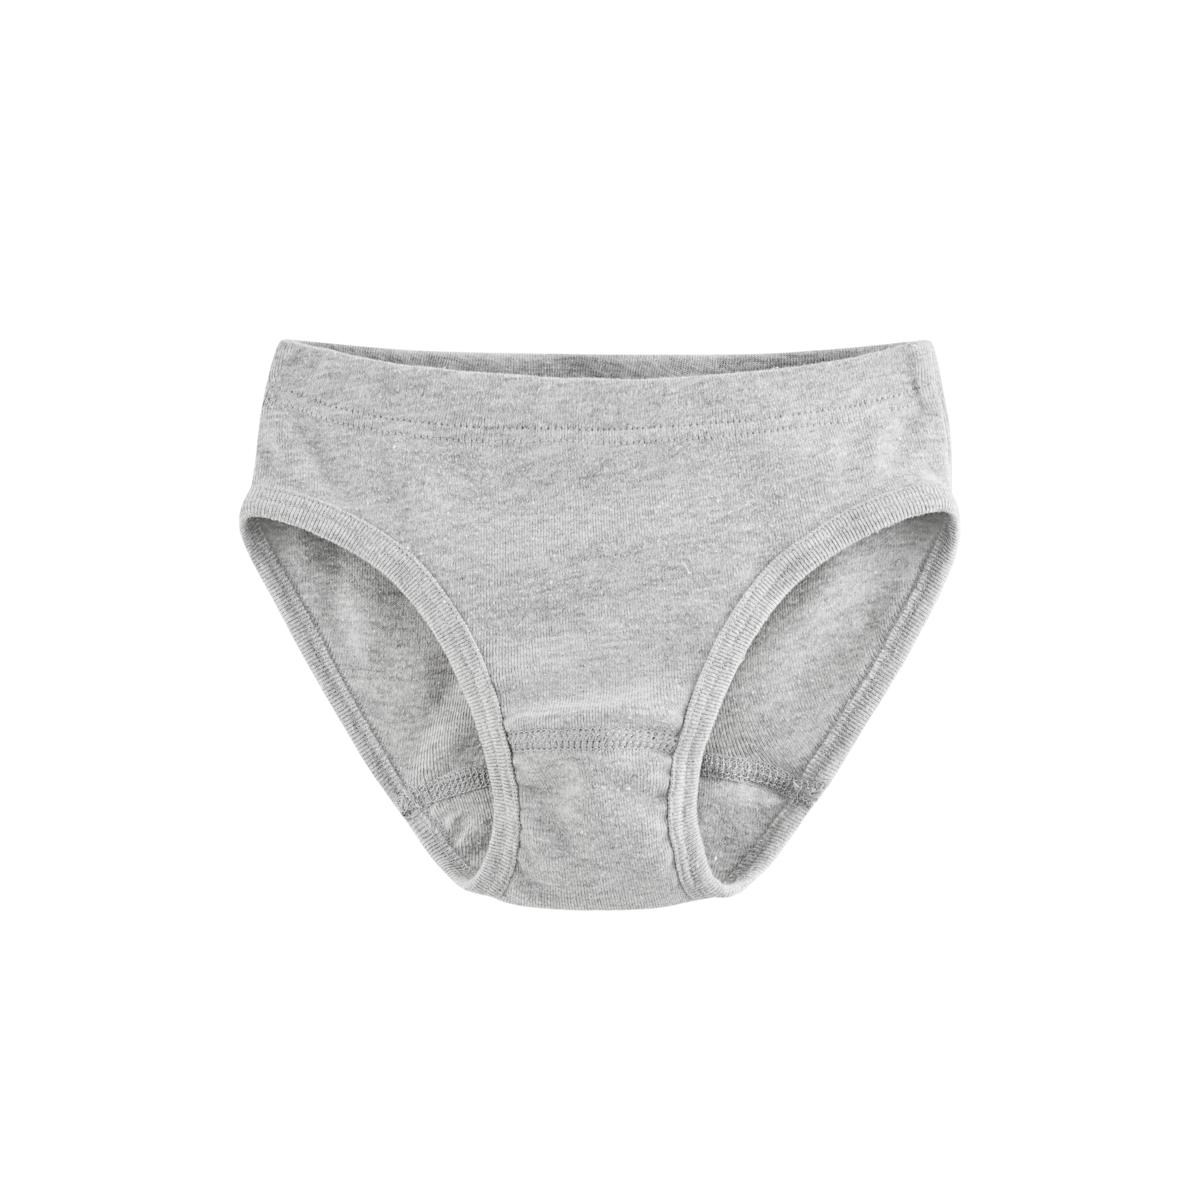 Brief Underwear made from Organic Cotton